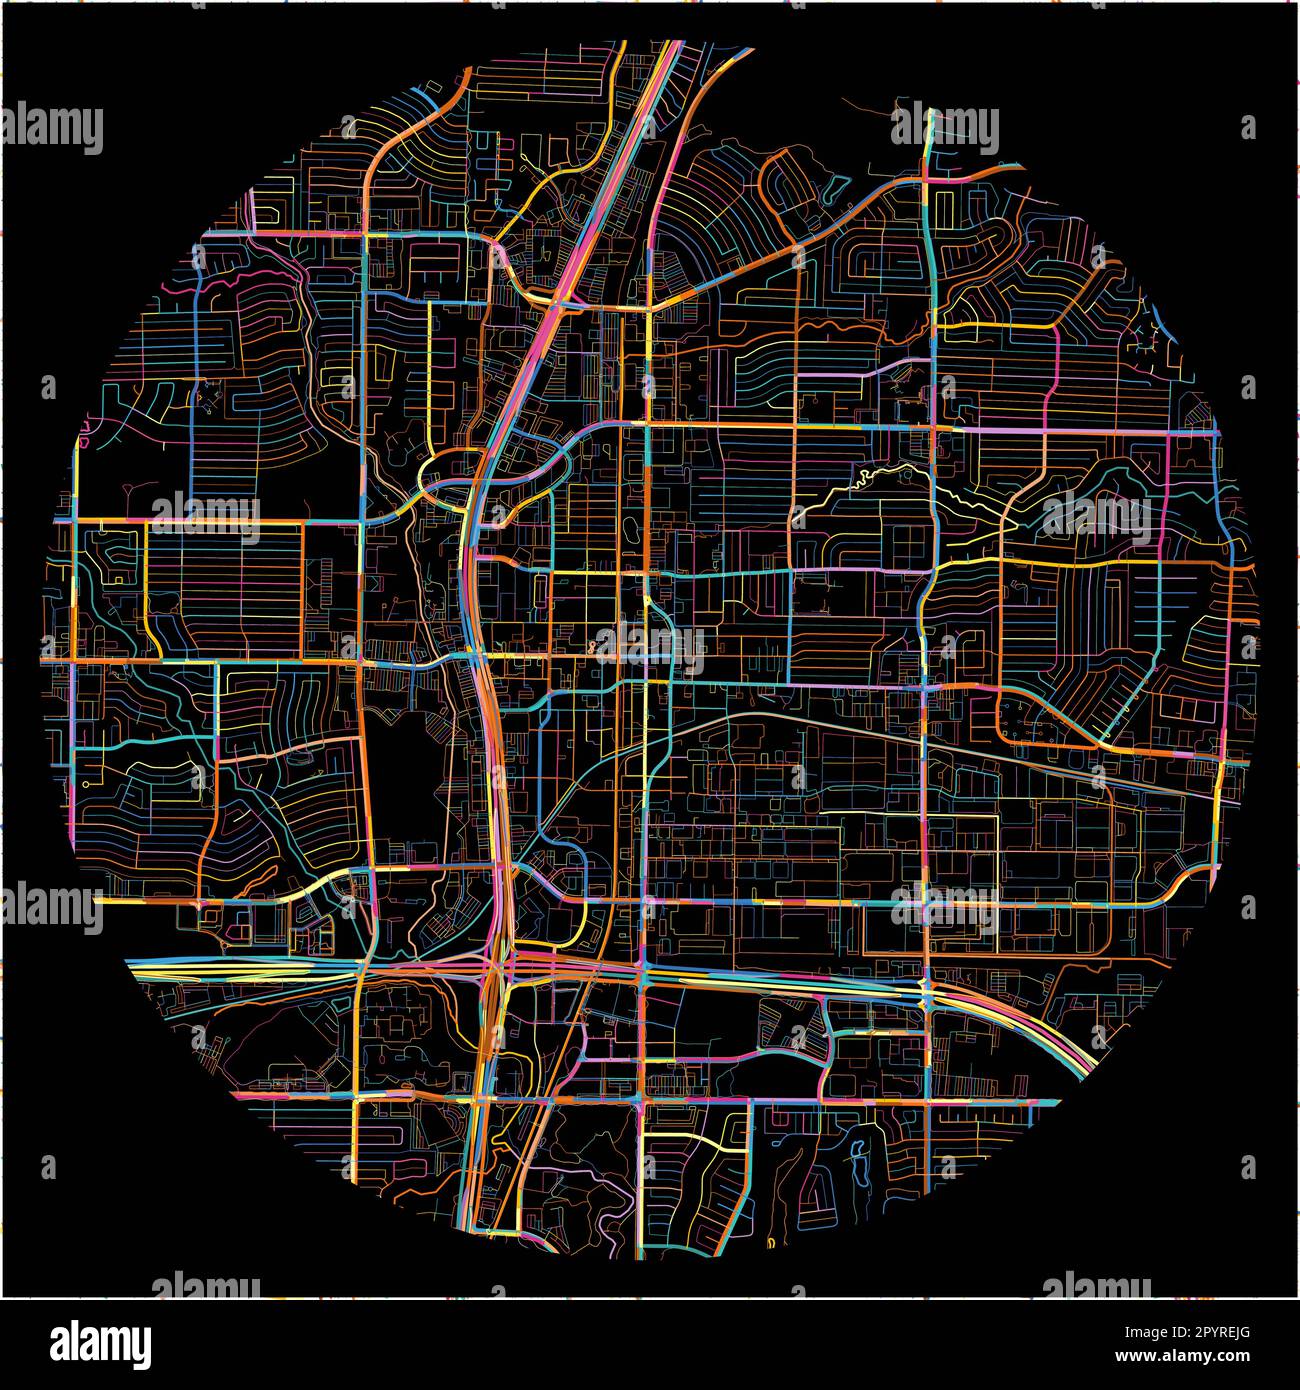 Mappa di Plano, Texas, con tutte le strade principali e minori, ferrovie e corsi d'acqua. Linee colorate su sfondo nero. Illustrazione Vettoriale